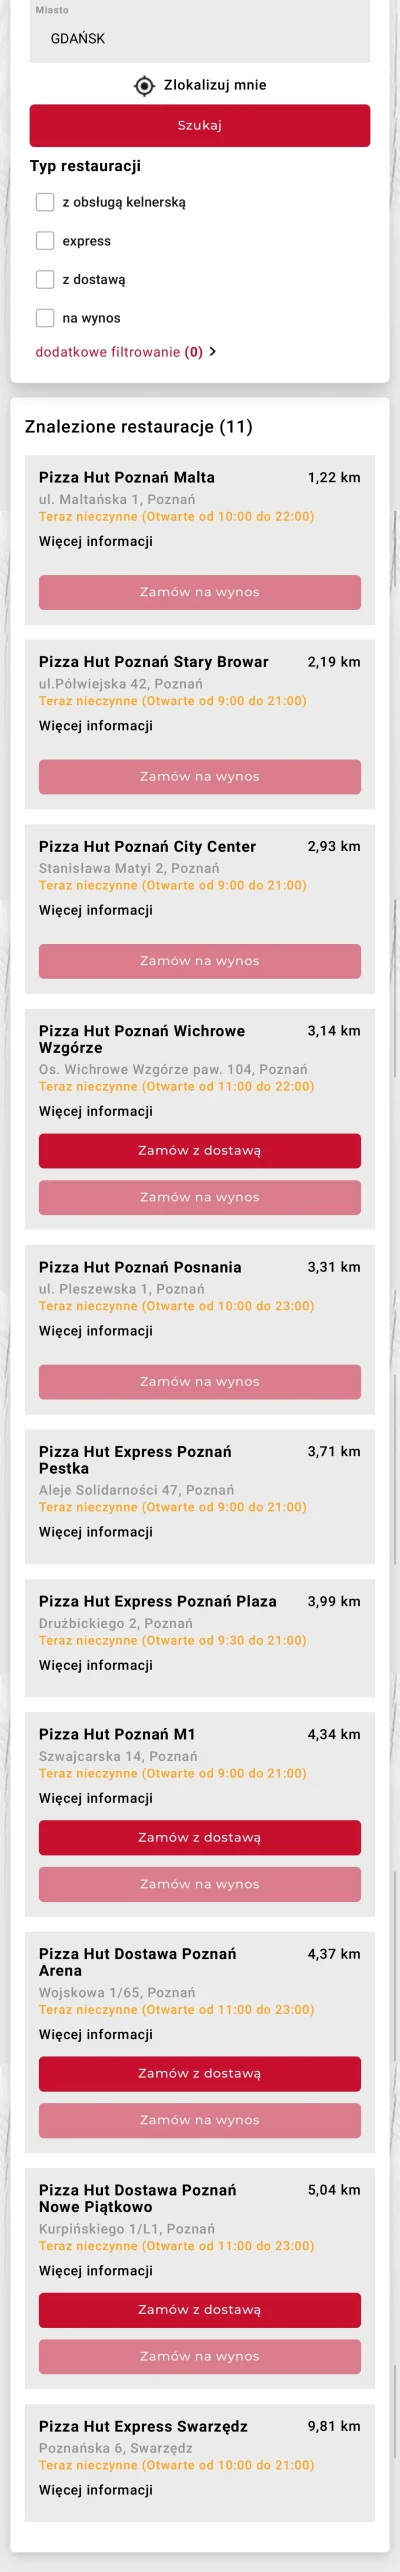 a3sa - #pizzahut chyba miało pałe z geografii. #poznan #gdansk #heheszki